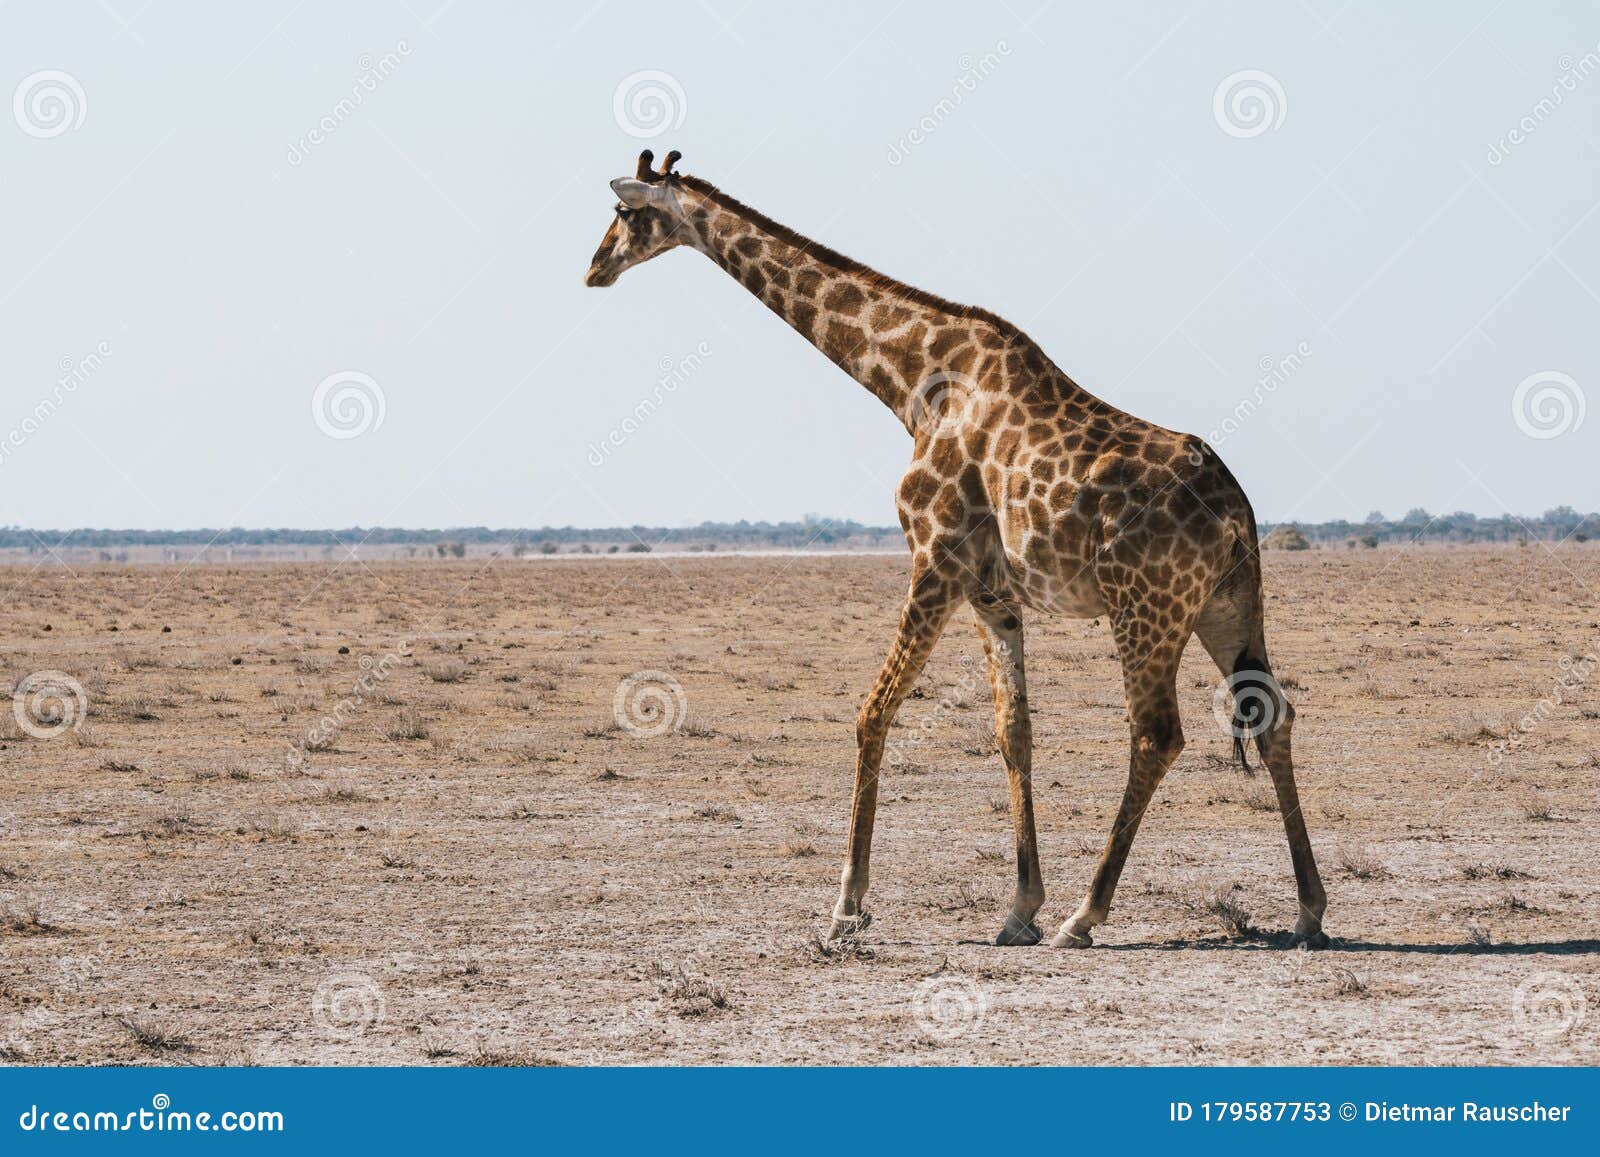 angolan giraffe walking in dry, plain of etosha pan, namibia